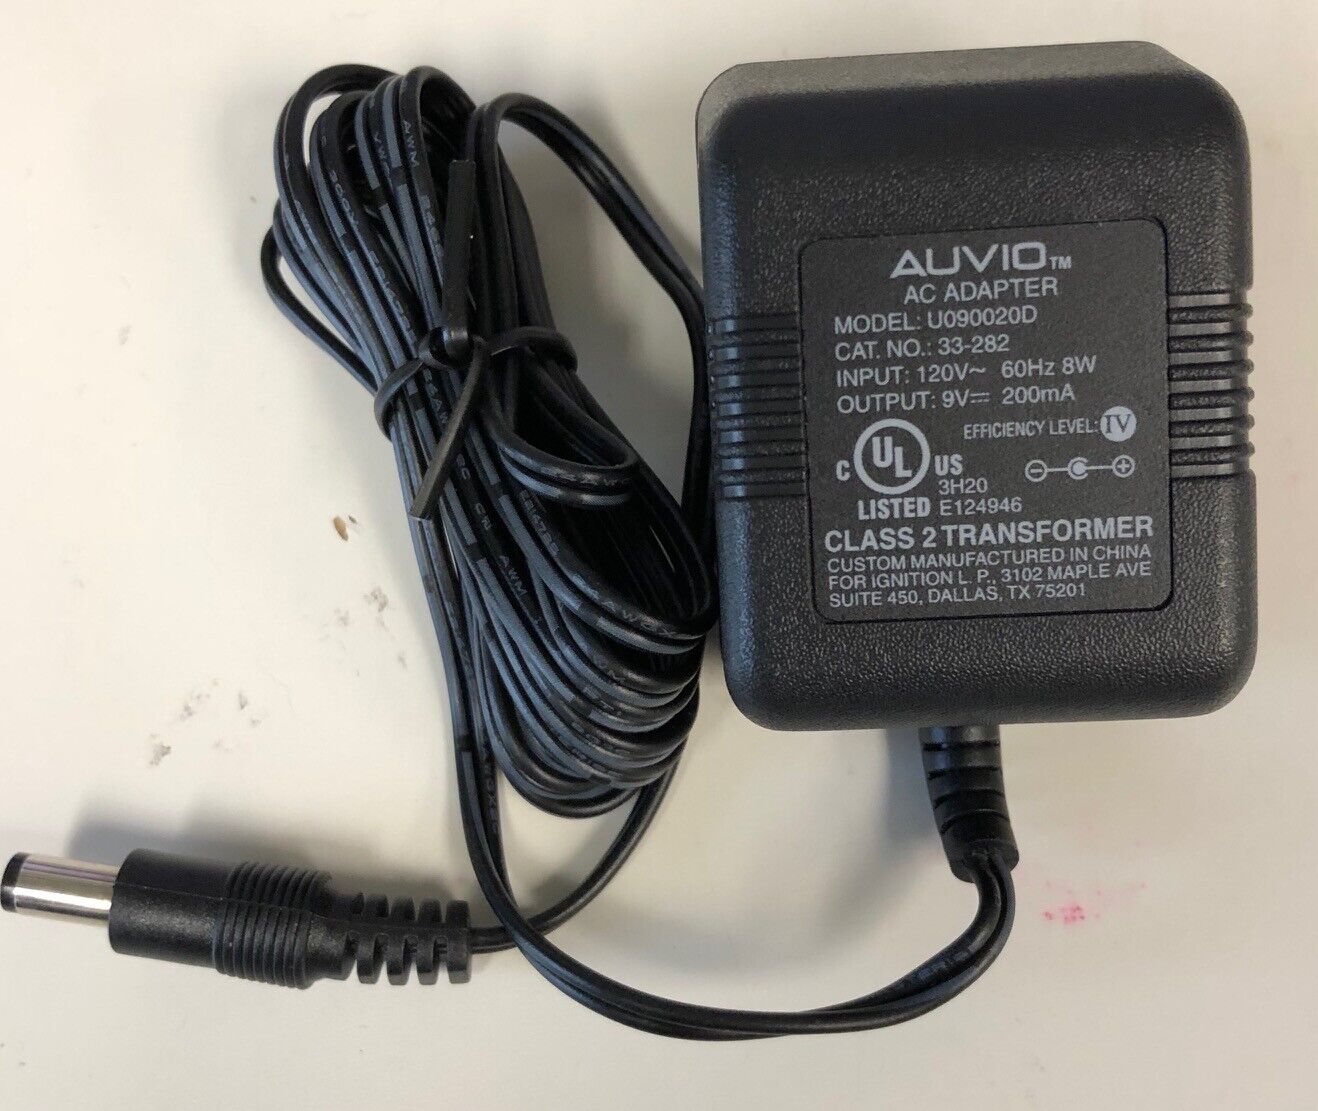 *Brand NEW* Auvio 9V 200mA AC Adaptor Cat NO 33-282 Model U090020D American Telecom POWER Supply